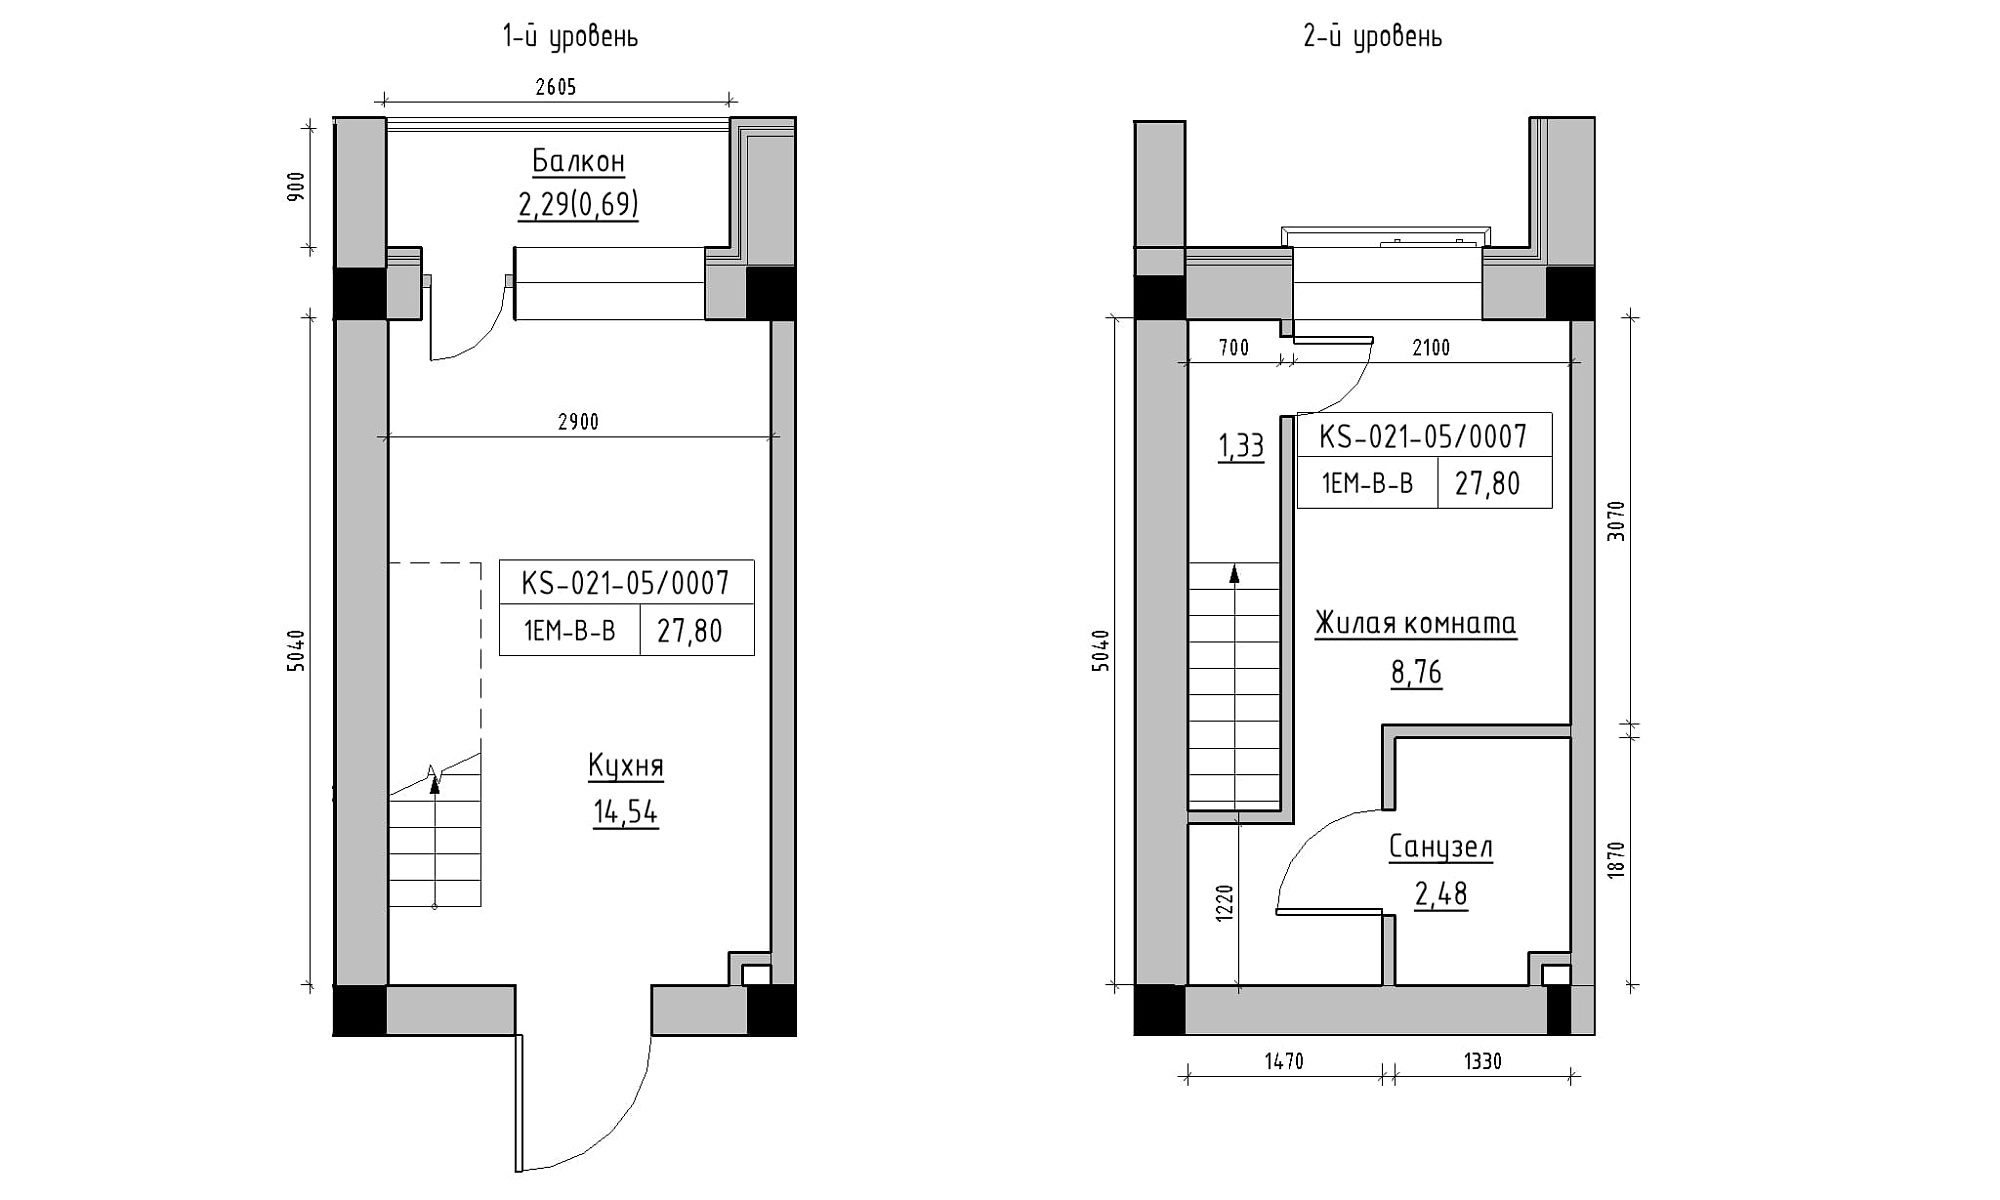 Planning 2-lvl flats area 27.8m2, KS-021-05/0007.